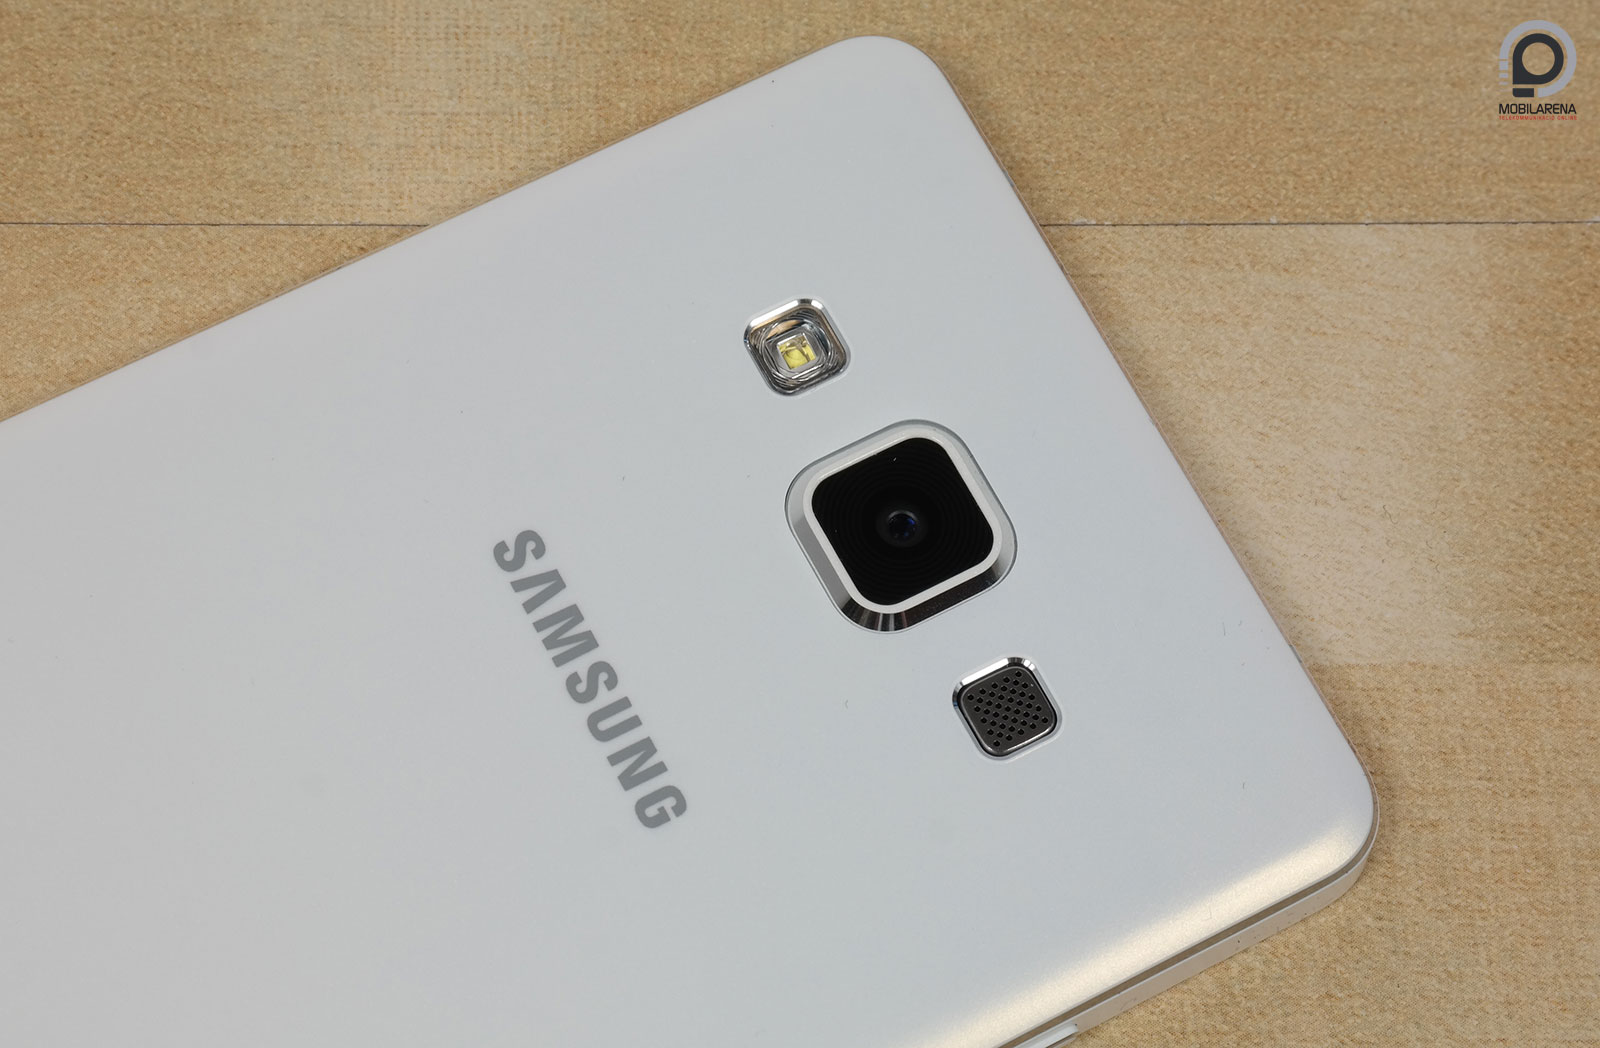 Samsung Galaxy A5 - fém test, fém lélek - Mobilarena Okostelefon teszt